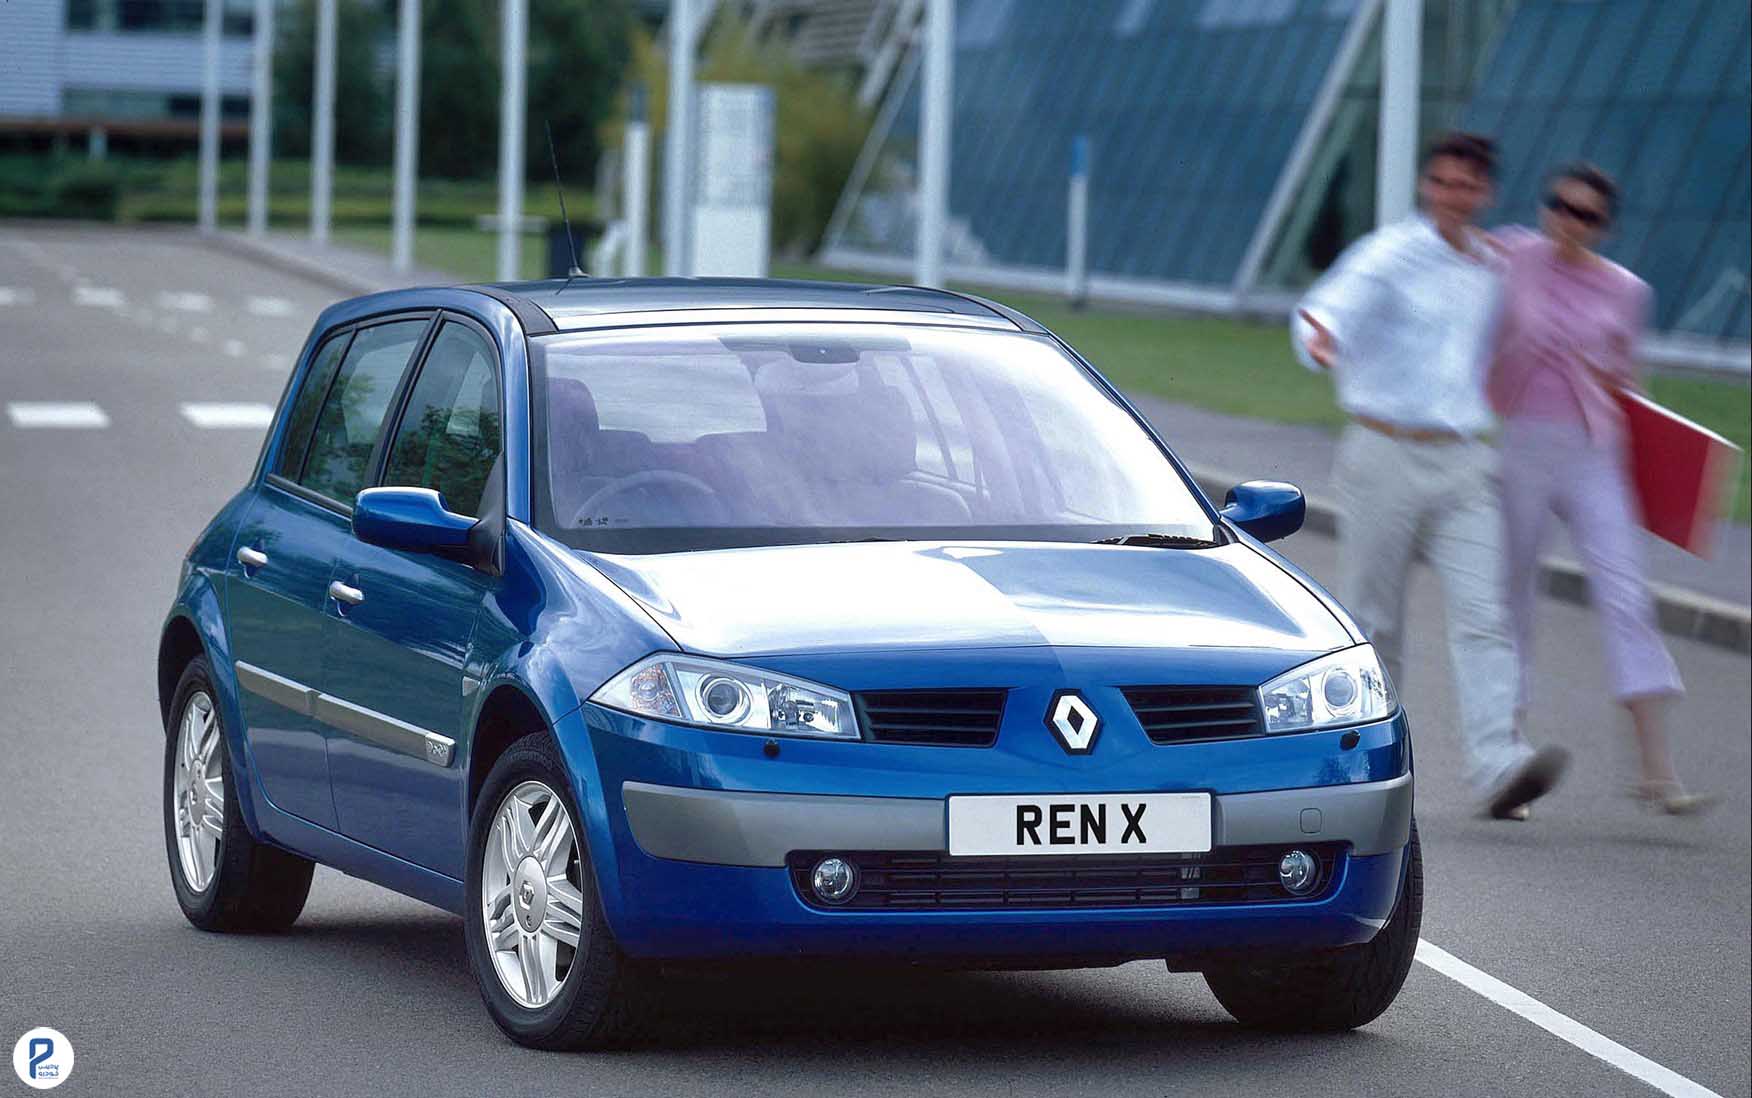 2002 megane. Renault Megane 2. Renault Megane II 2002. Рено Меган 2 поколение. Рено Меган 2 2002.